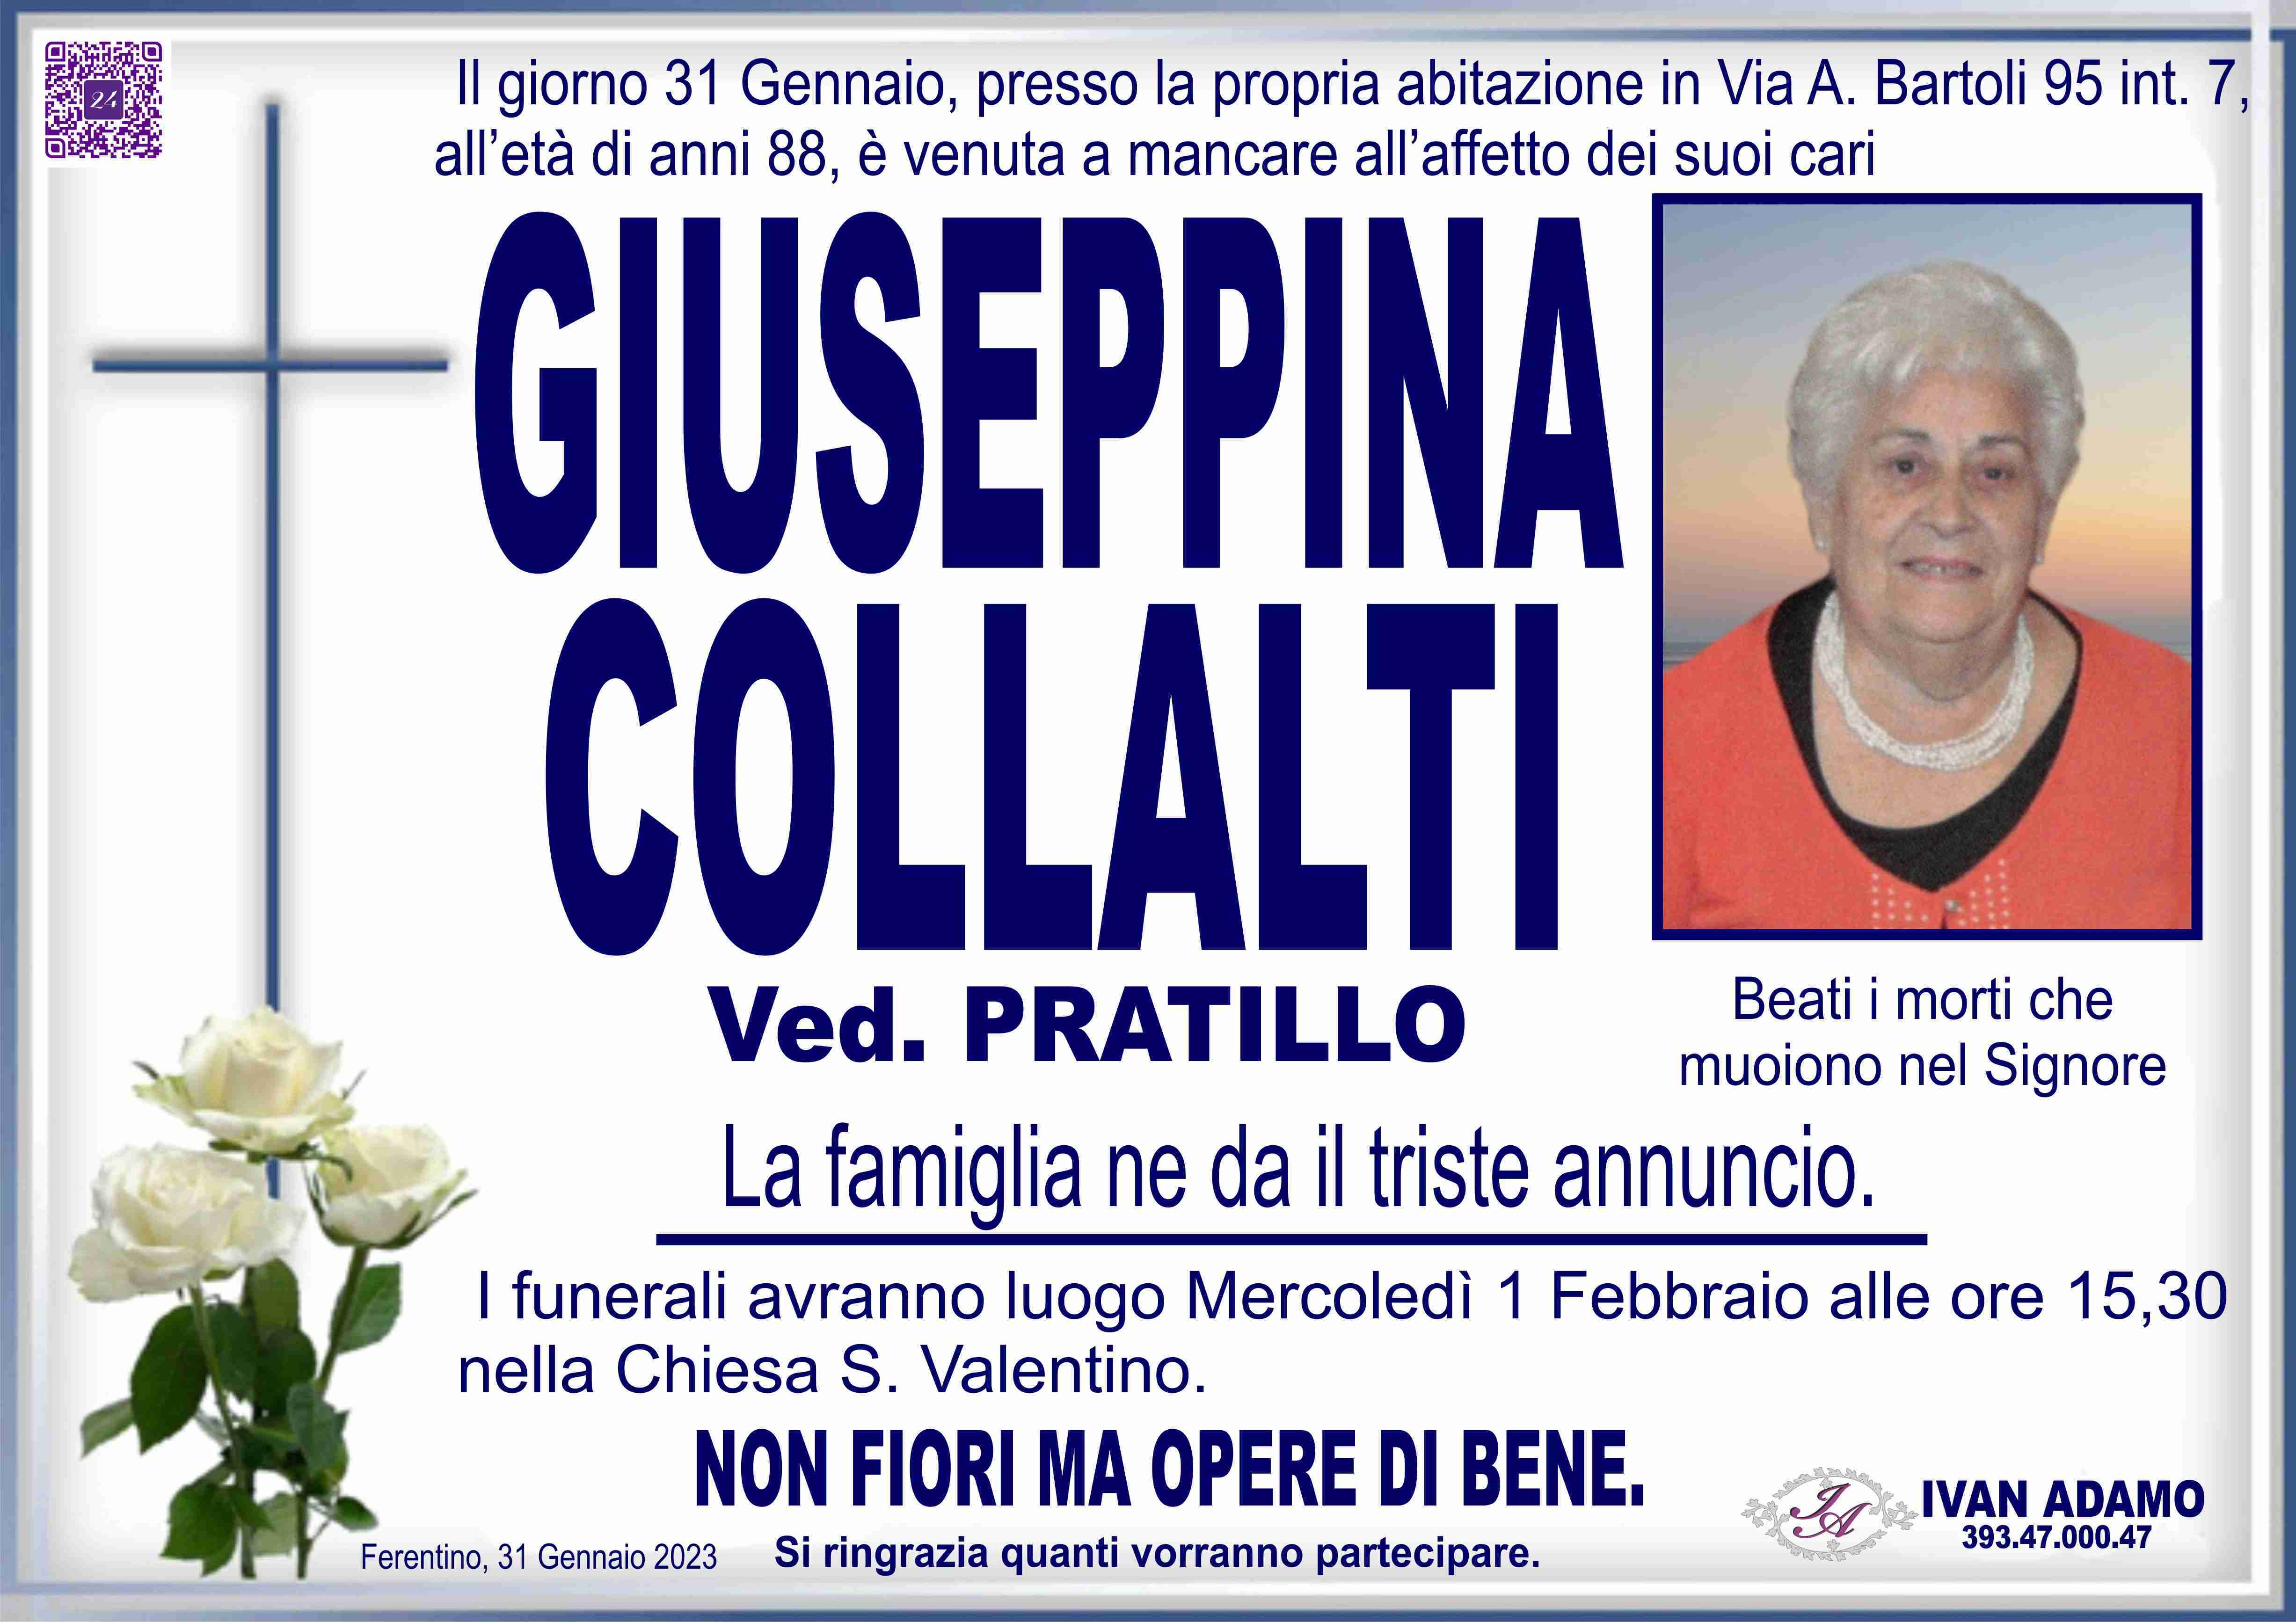 Giuseppina Collalti